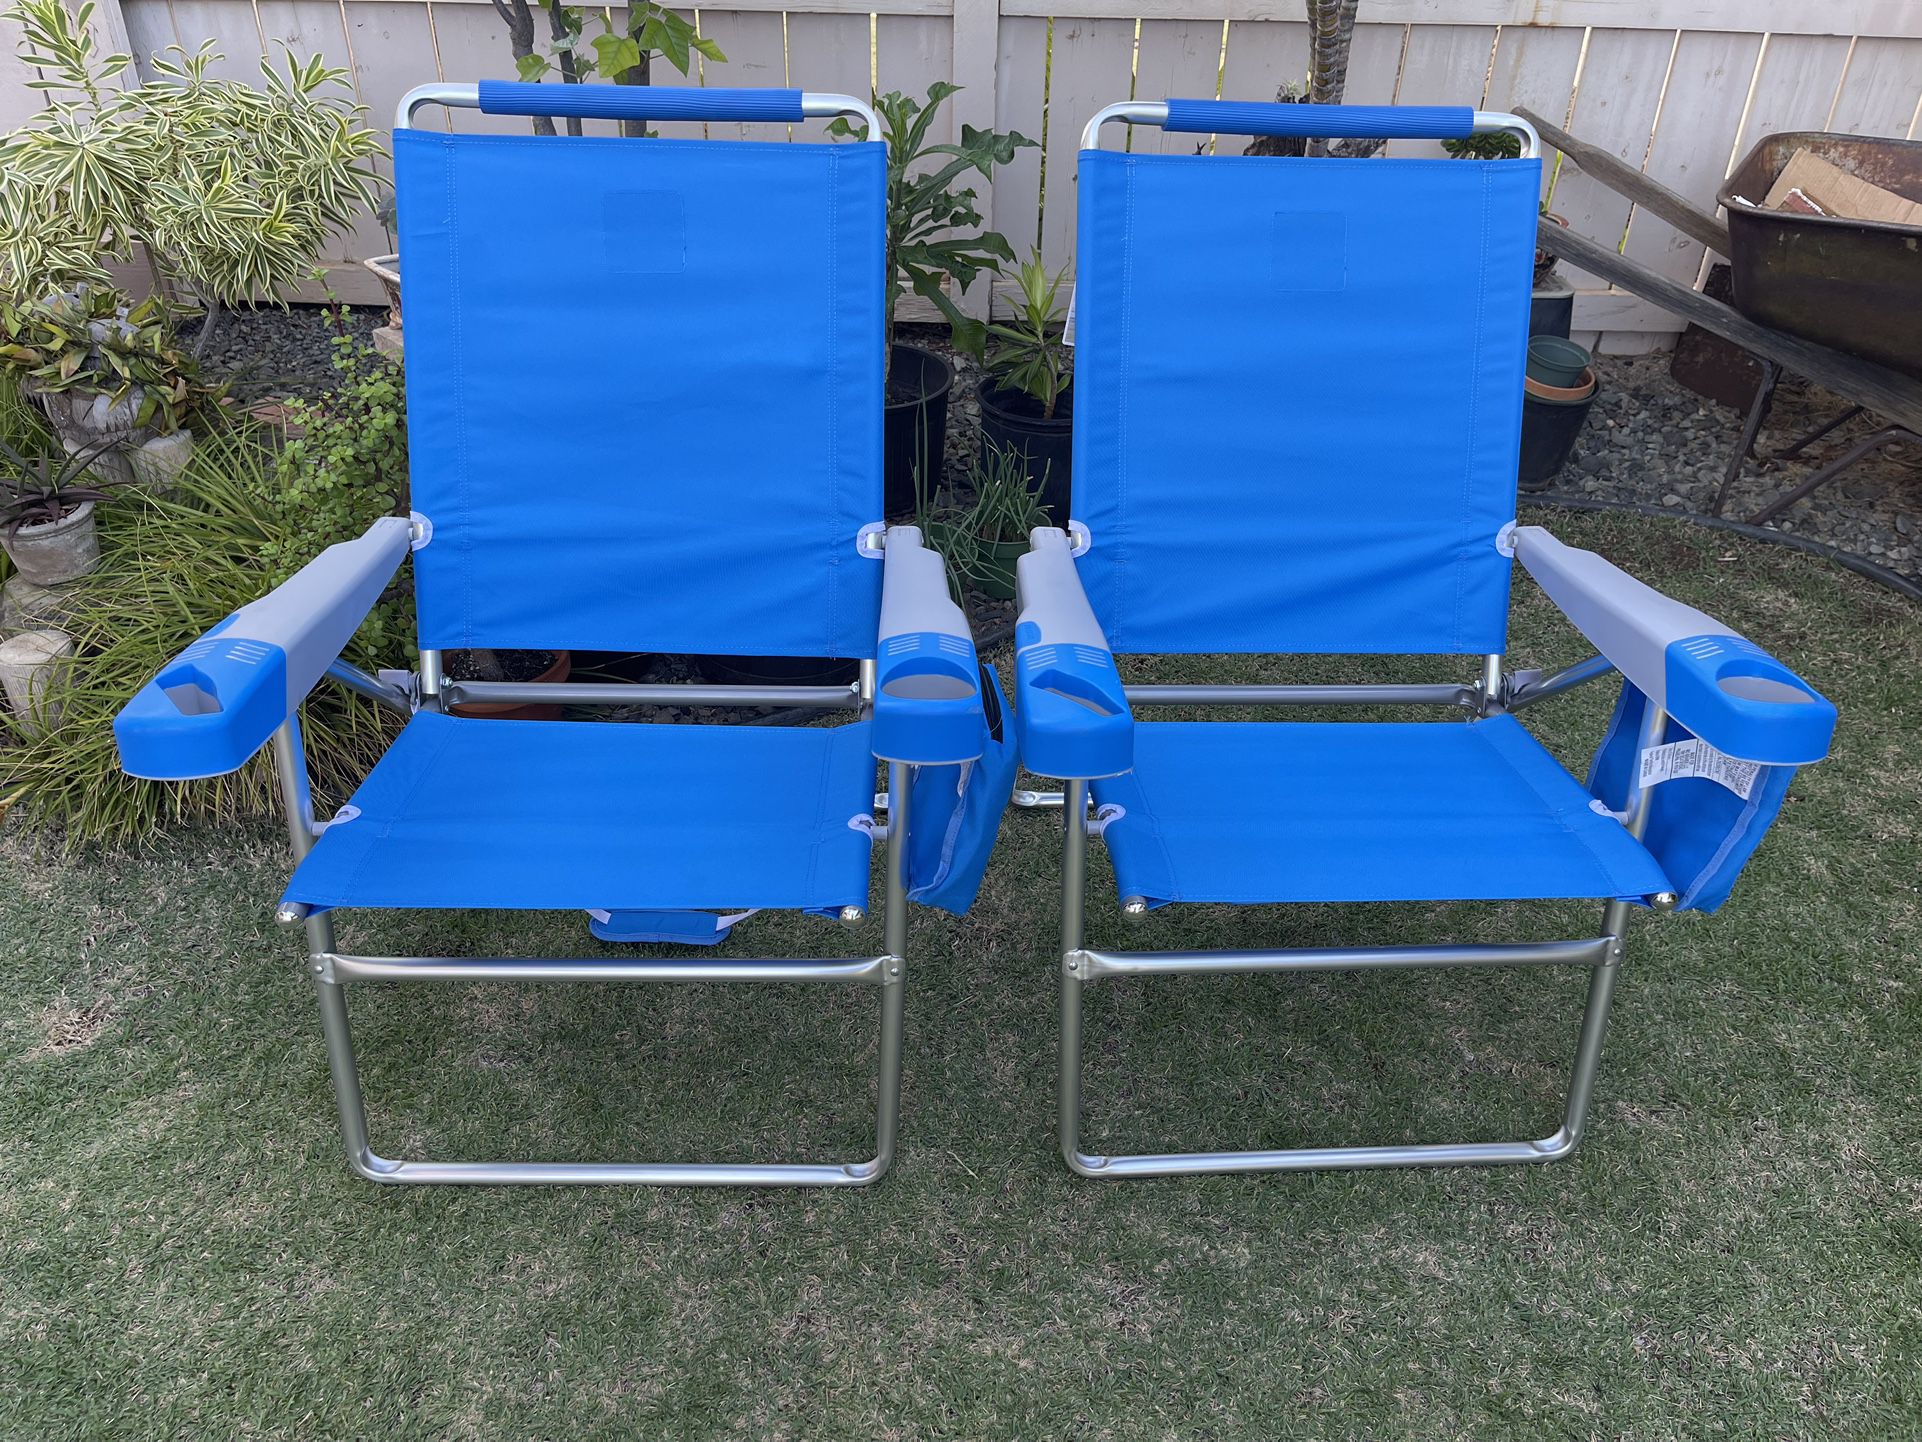  Beach Chair Chairs